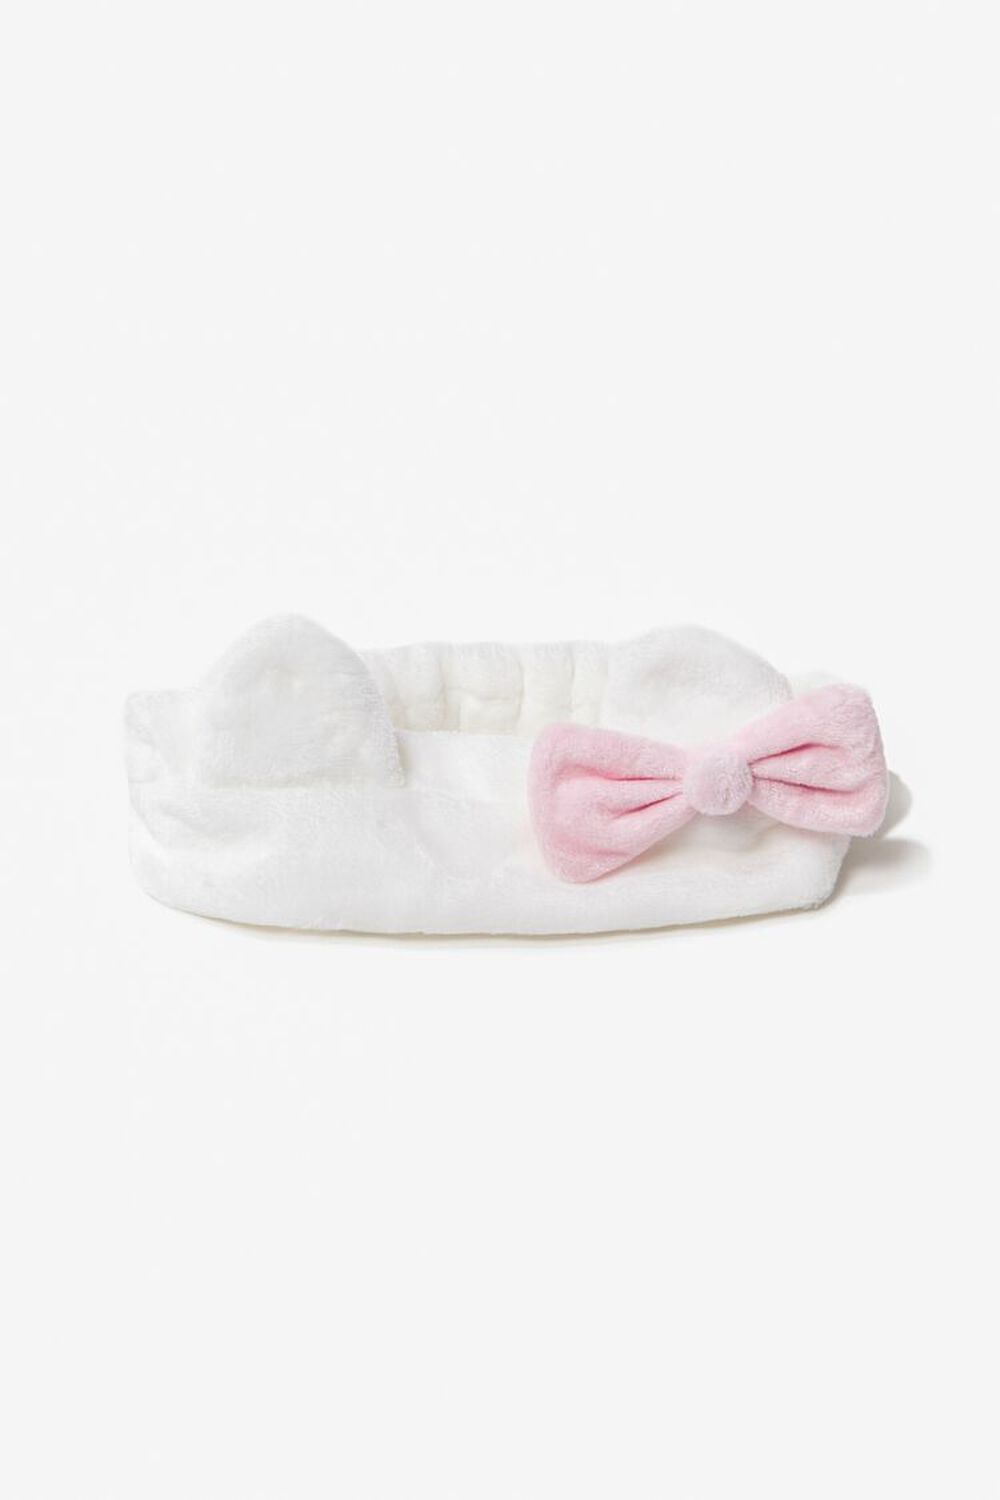 Plush Hello Kitty Headwrap, image 1